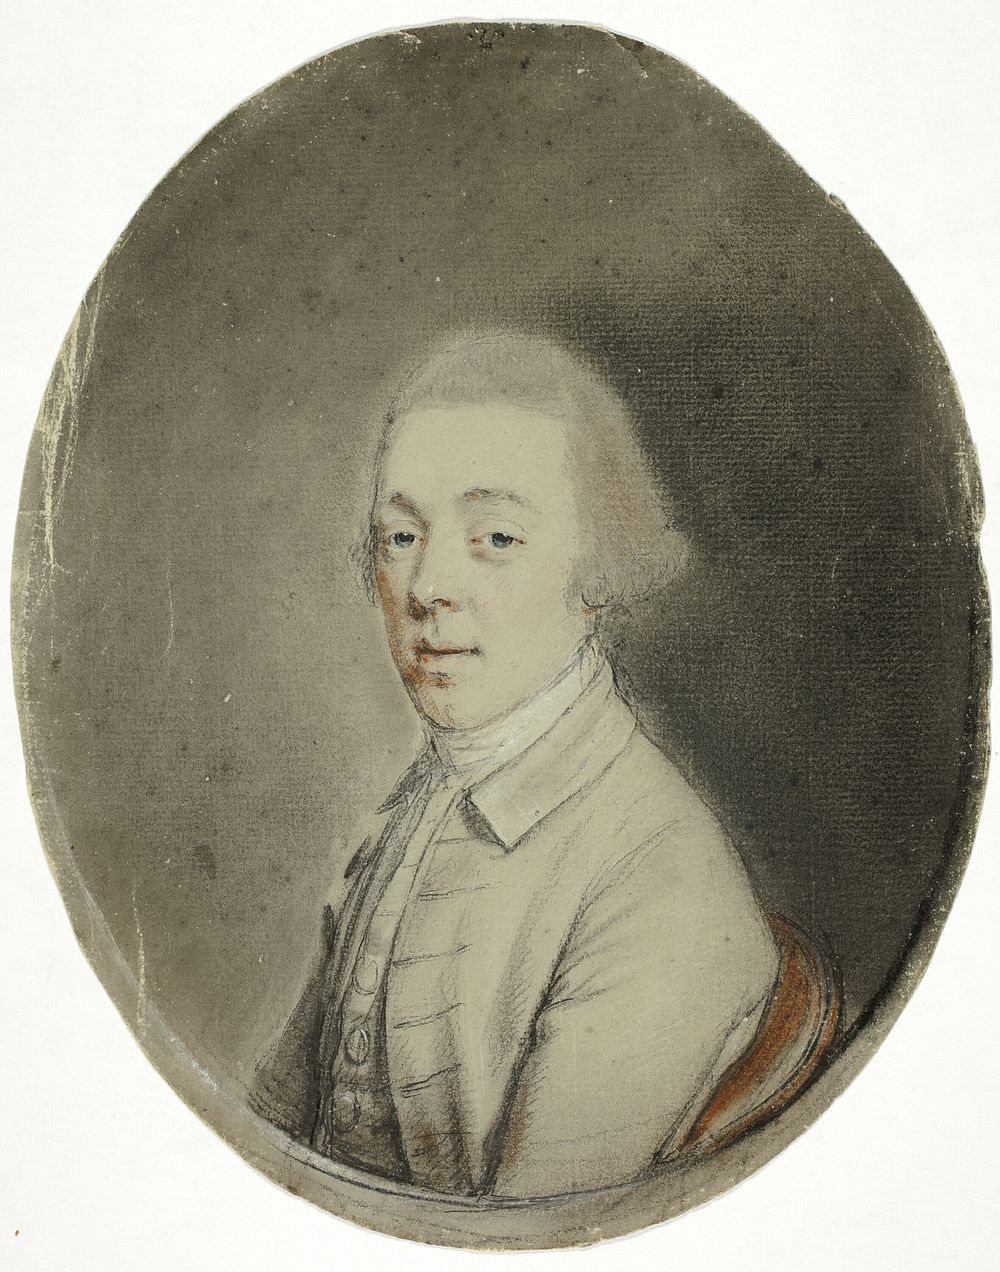 Portrait of a Man by Hugh Douglas Hamilton